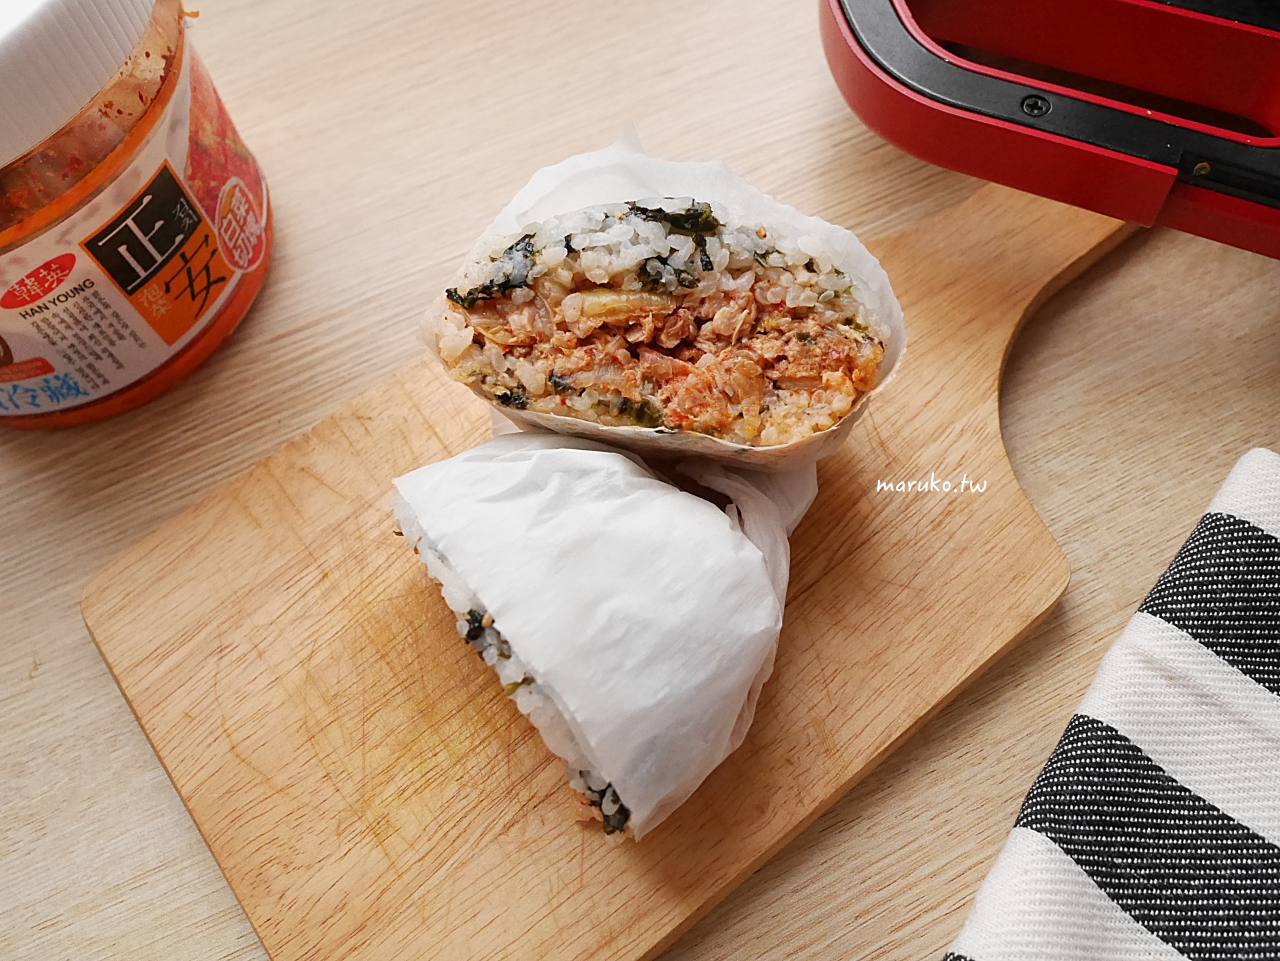 【食譜】泡菜鮪魚米漢堡 5分鐘上菜 韓式海苔拌飯米漢堡這樣做